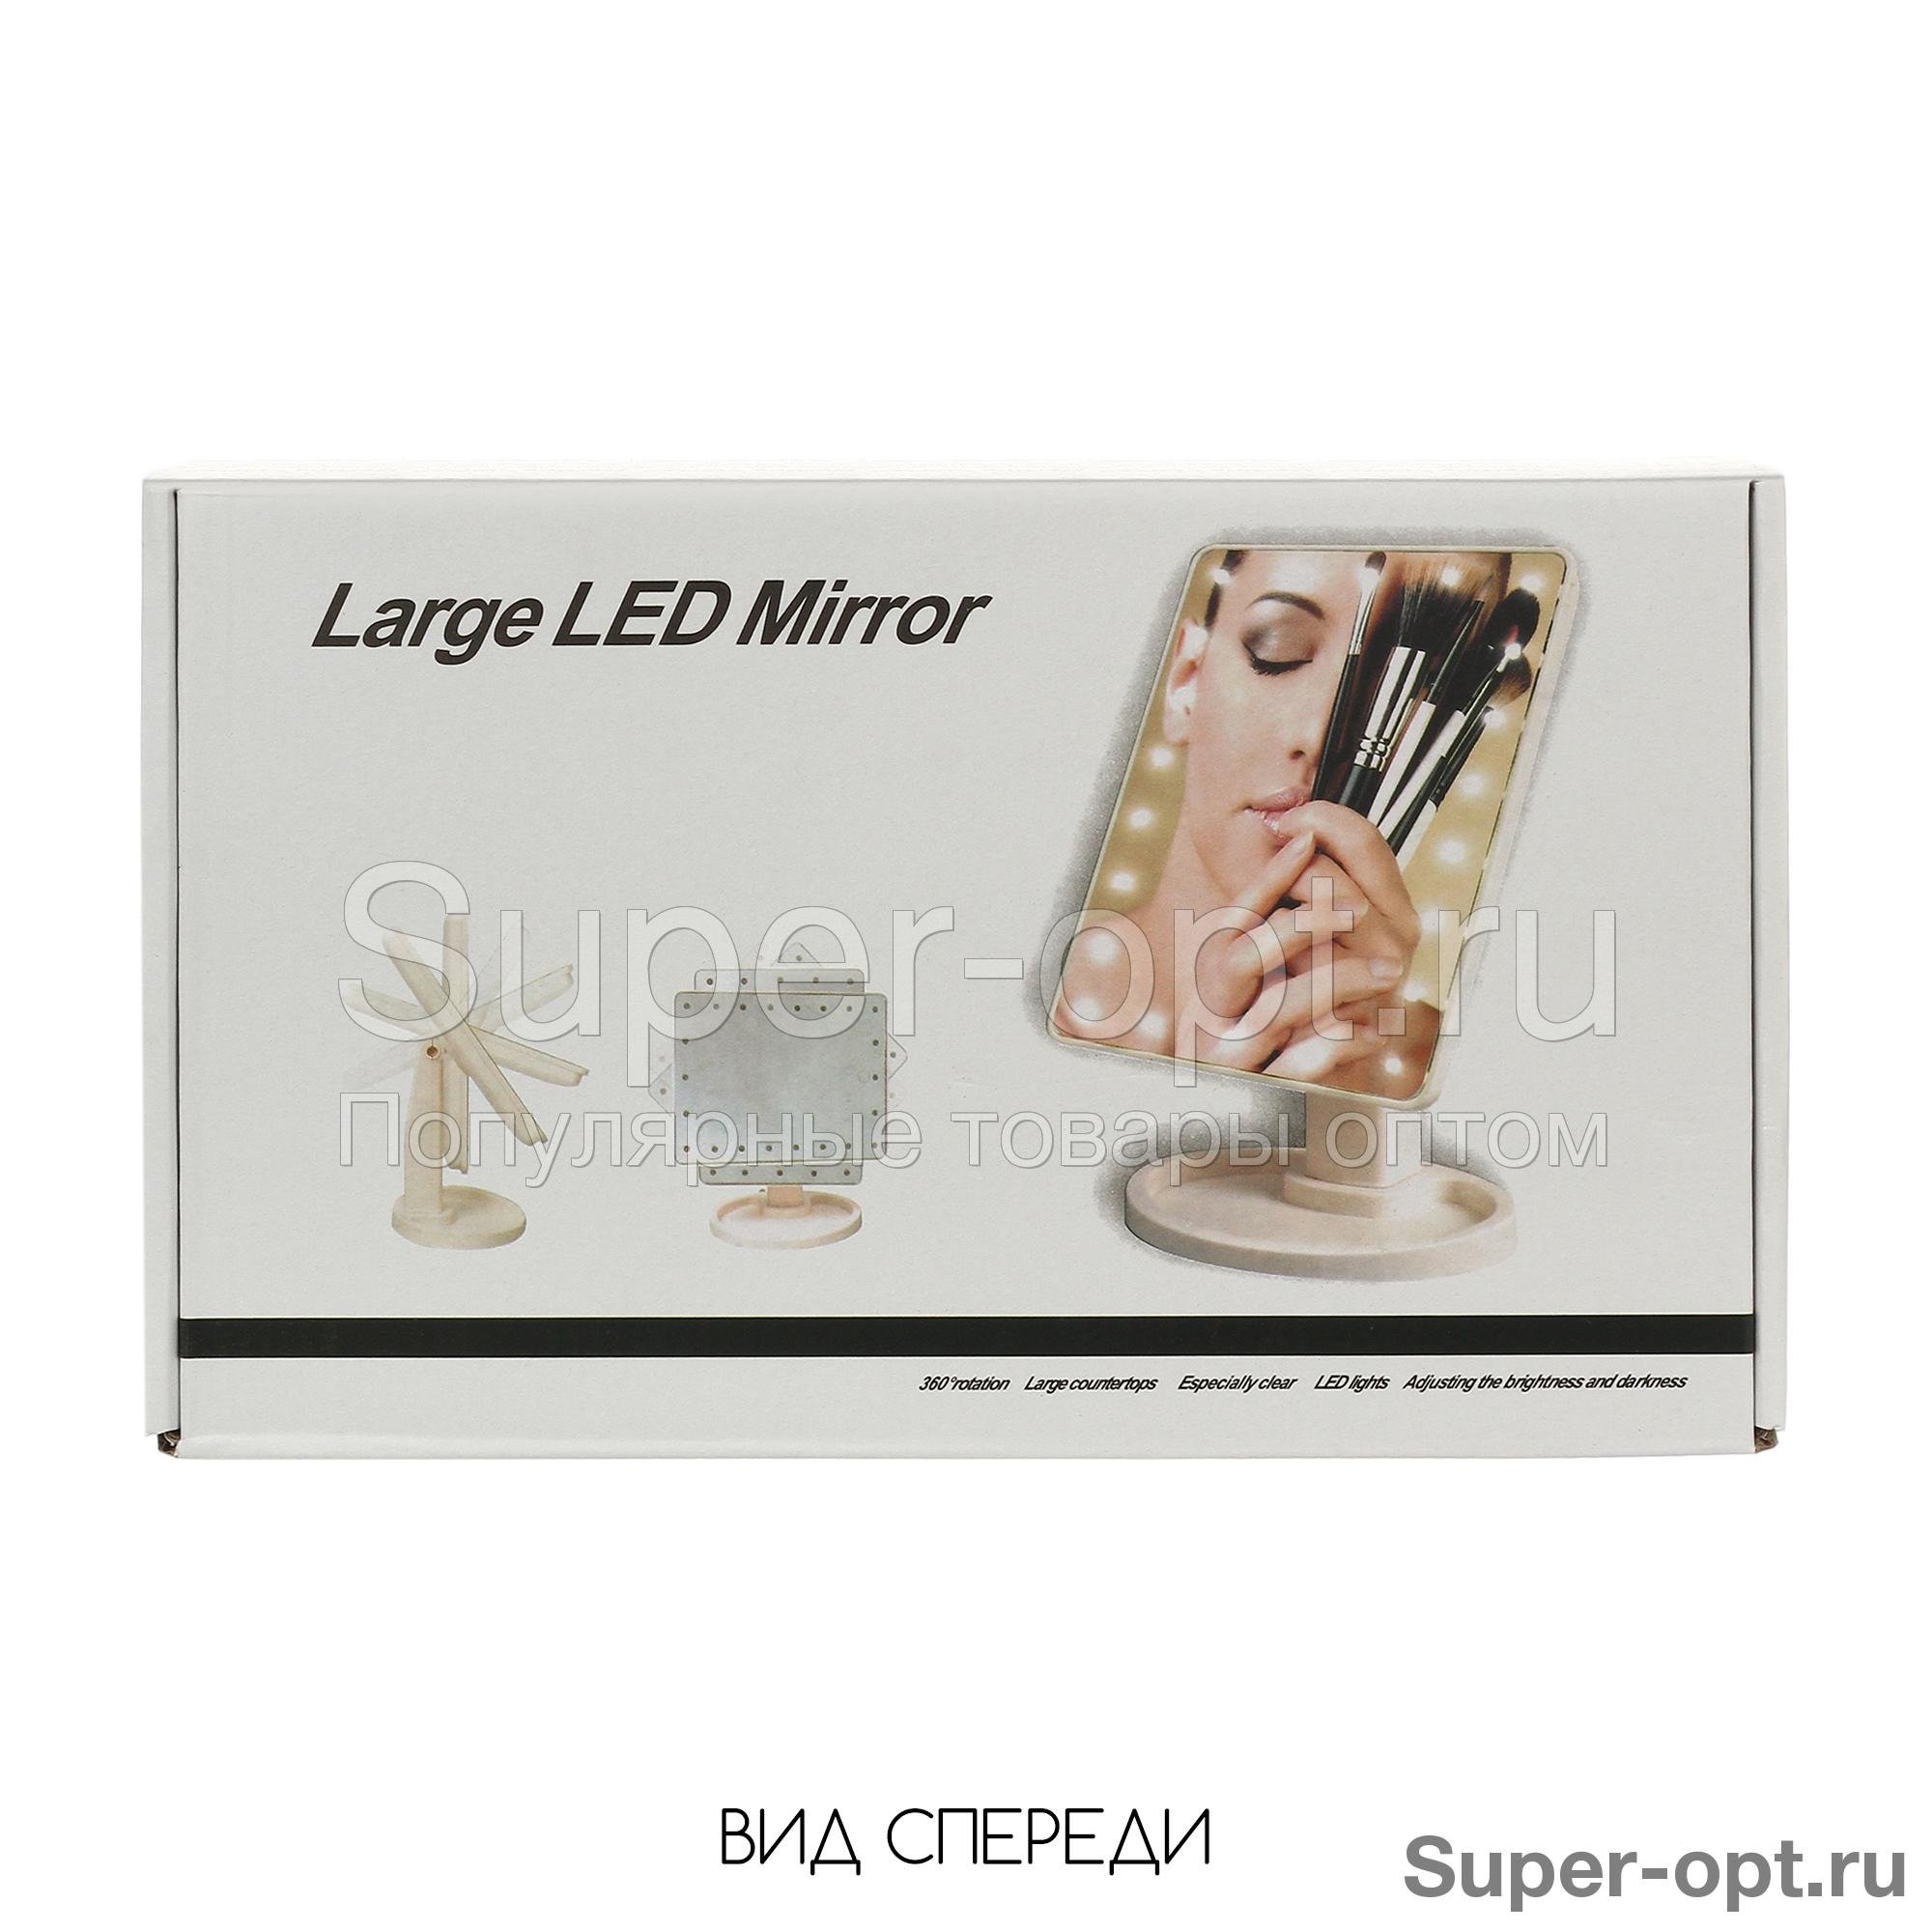 Косметическое зеркало с подсветкой Large Led Mirror оптом